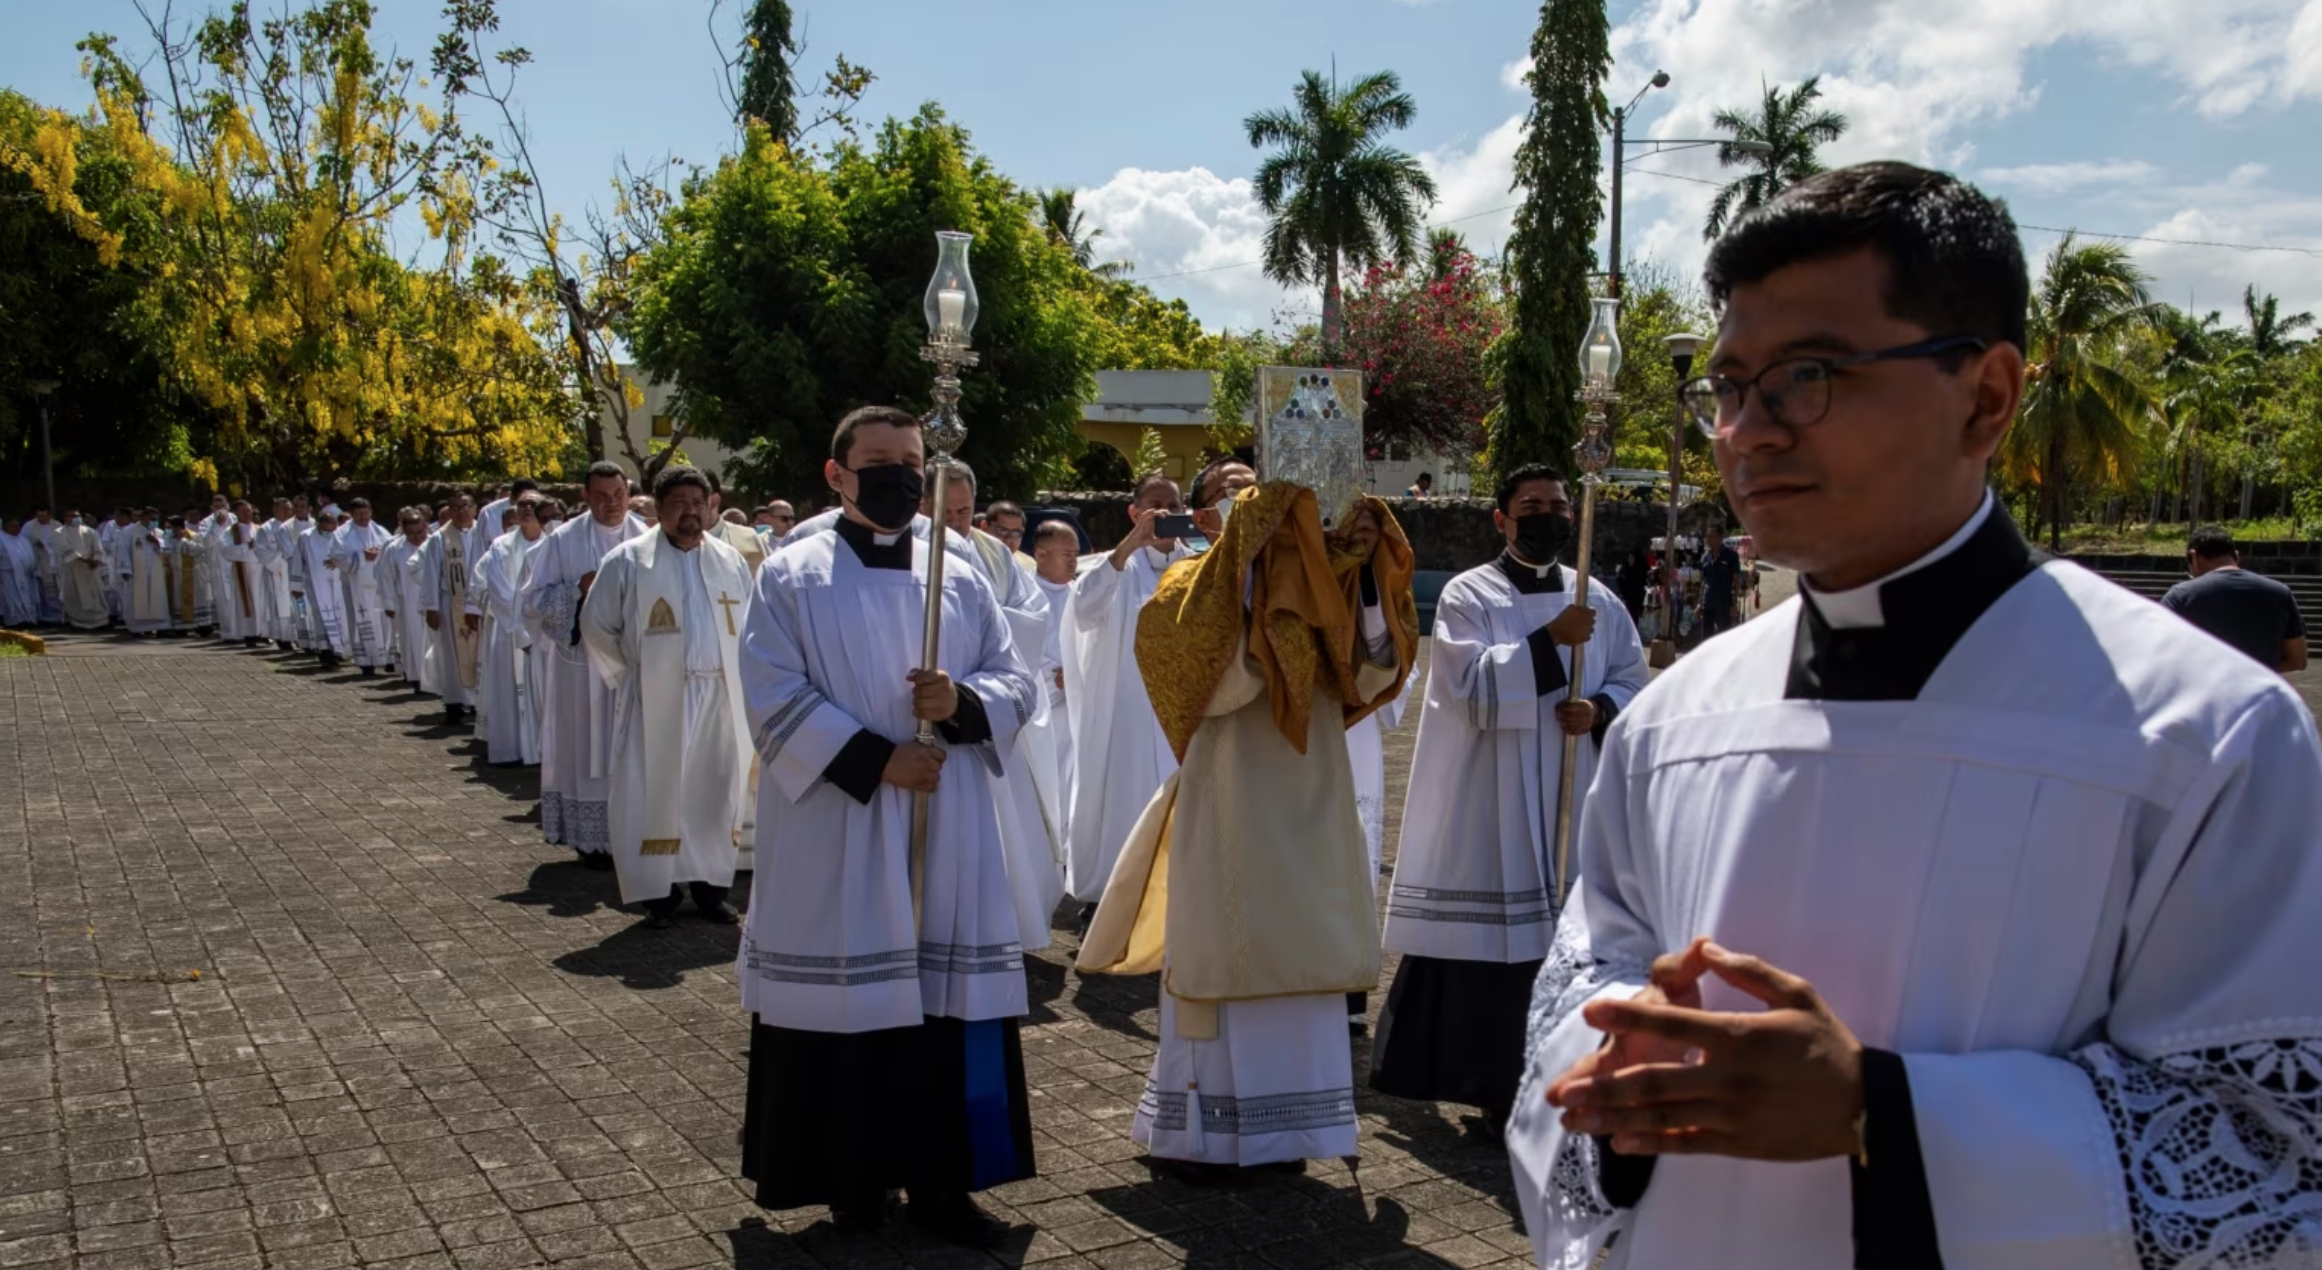 Nicaragua libera y envía a 12 sacerdotes al vaticano tras negociaciones con la Santa Sede